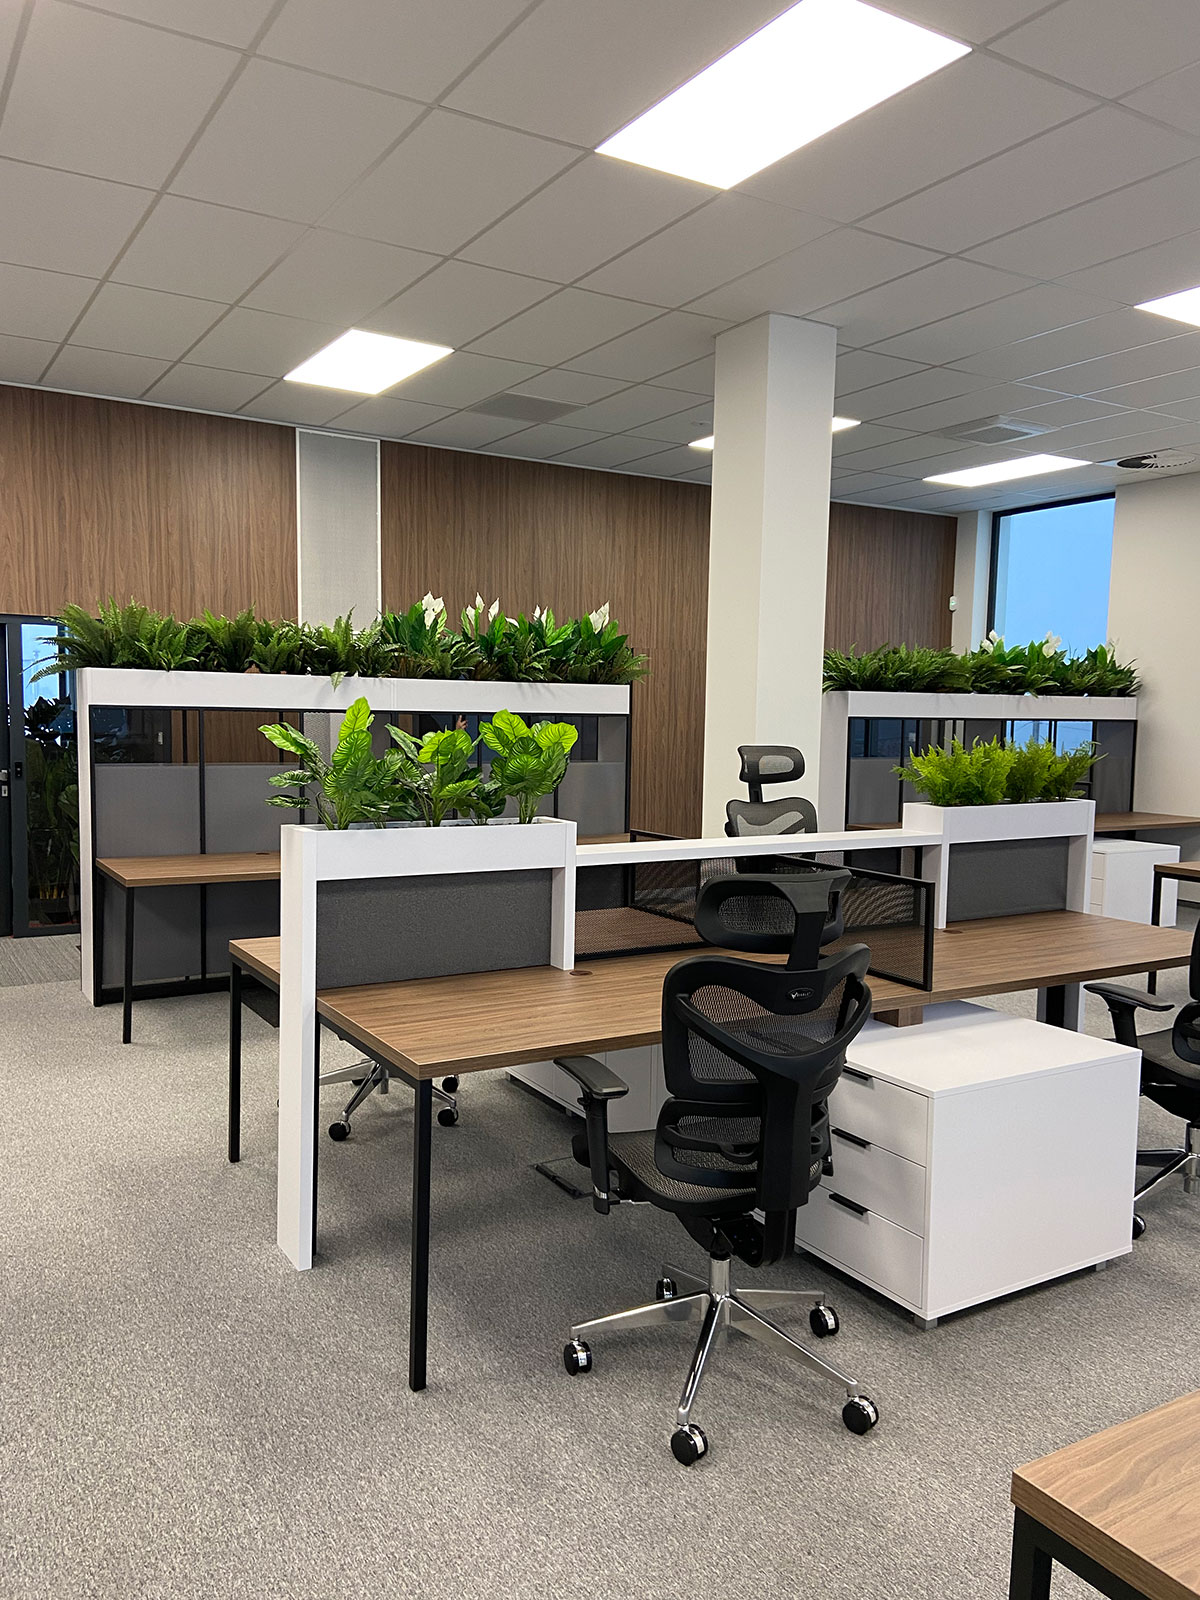 Otwarte biuro z biurkami i roślinami.